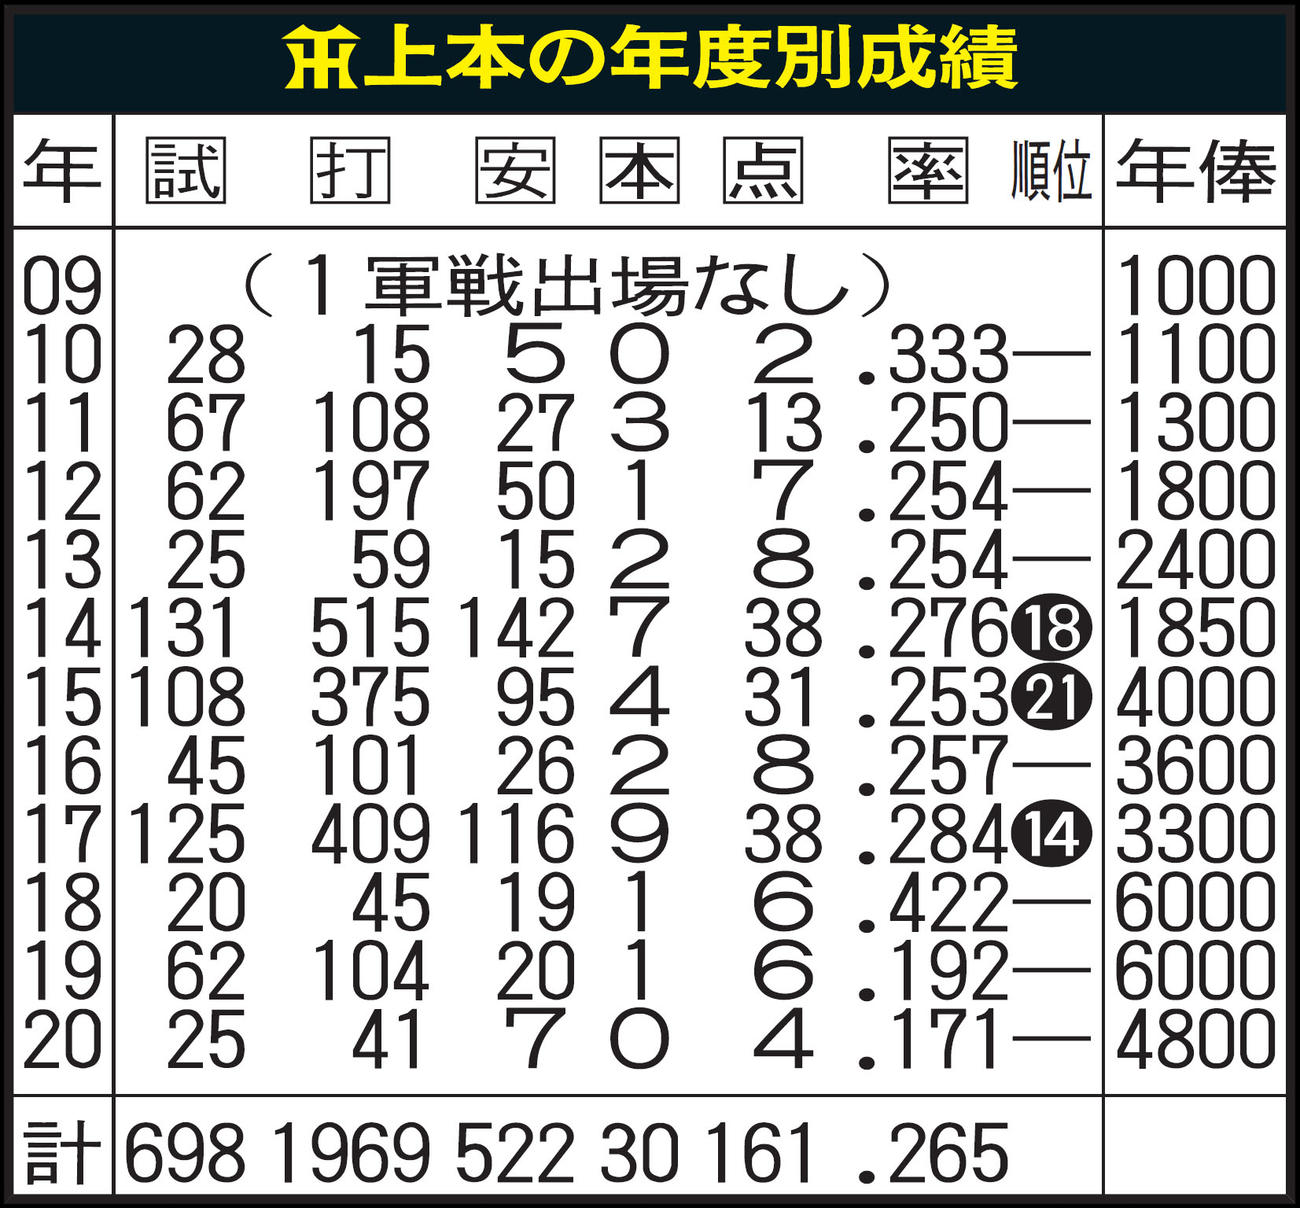 阪神タイガース及びその前身球団の年度別成績一覧